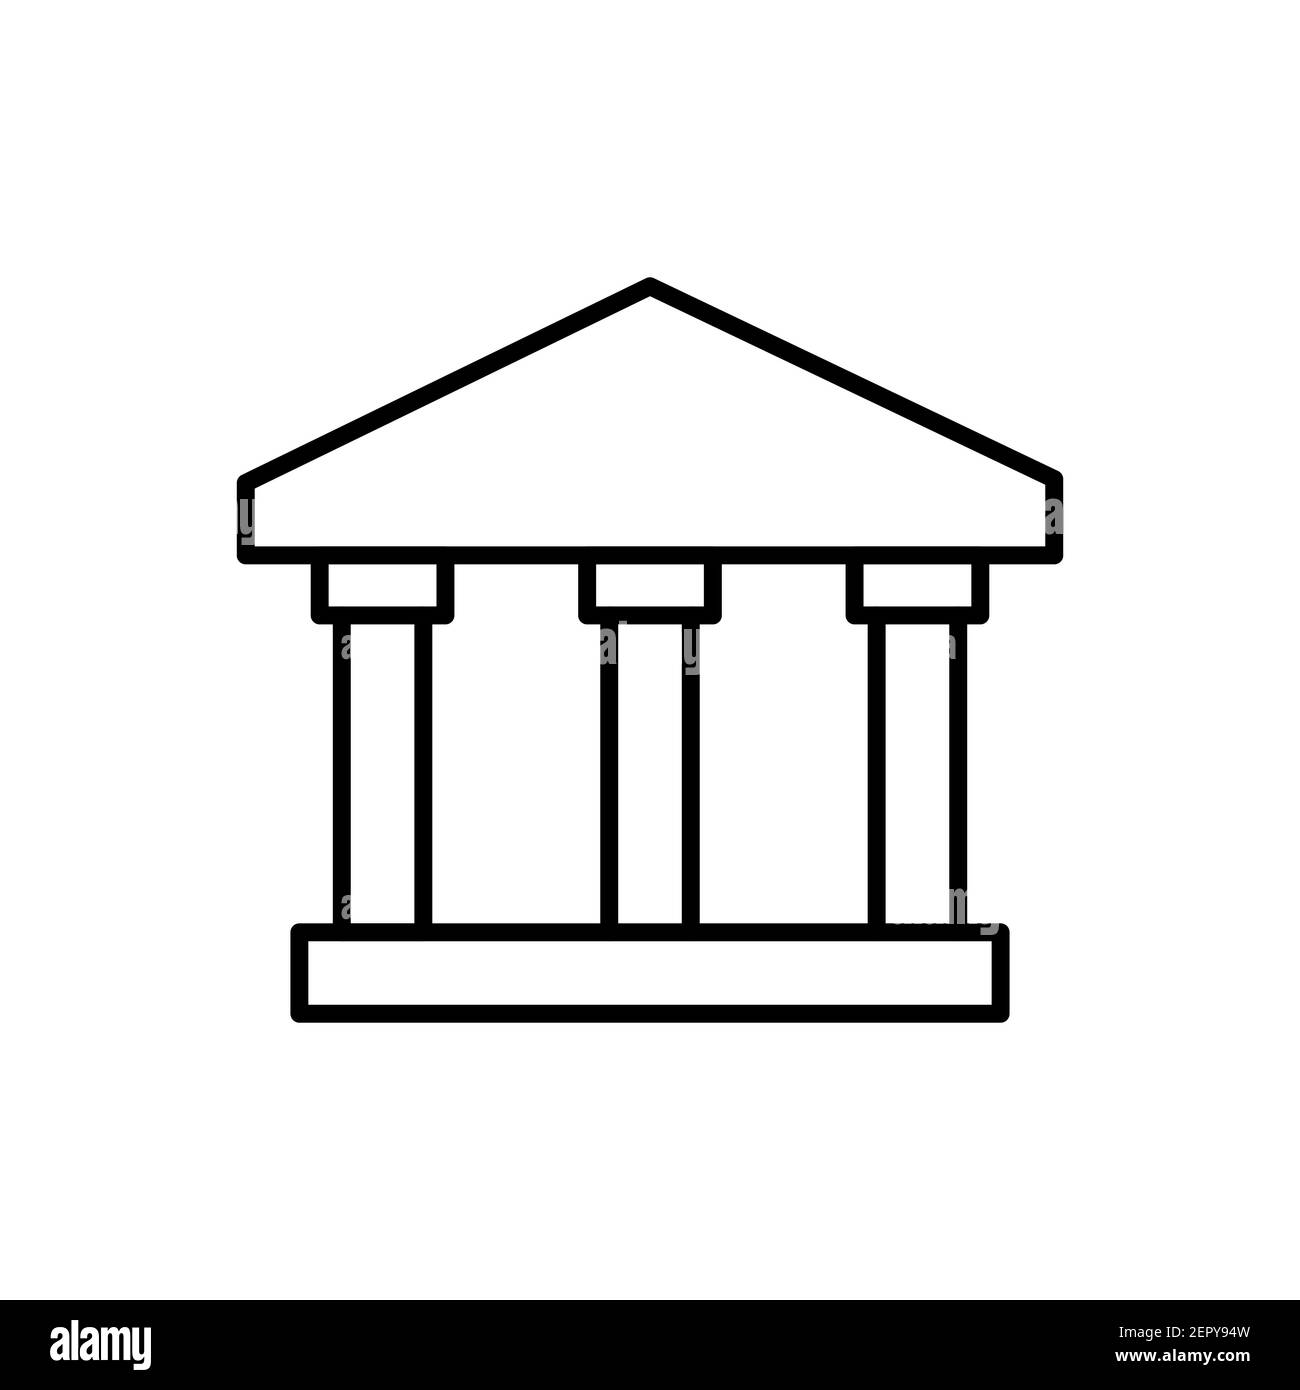 Icona della linea di banca. Segno lineare dell'università. Edificio con colonne simbolo di contorno. Vettore isolato su bianco Illustrazione Vettoriale